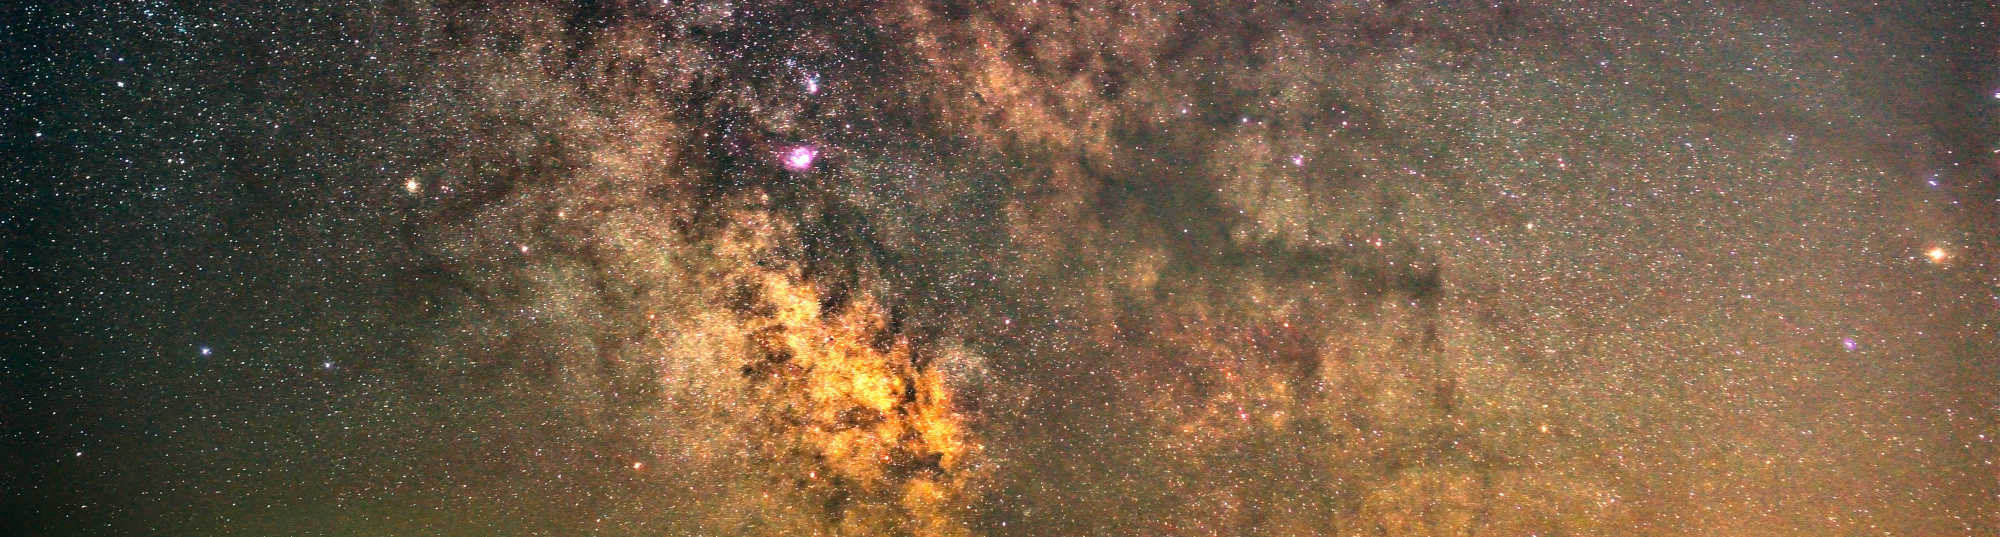 Galaktisches Zentrum der Milchstraße im Juni, aufgenommen im Nordschwarzwald